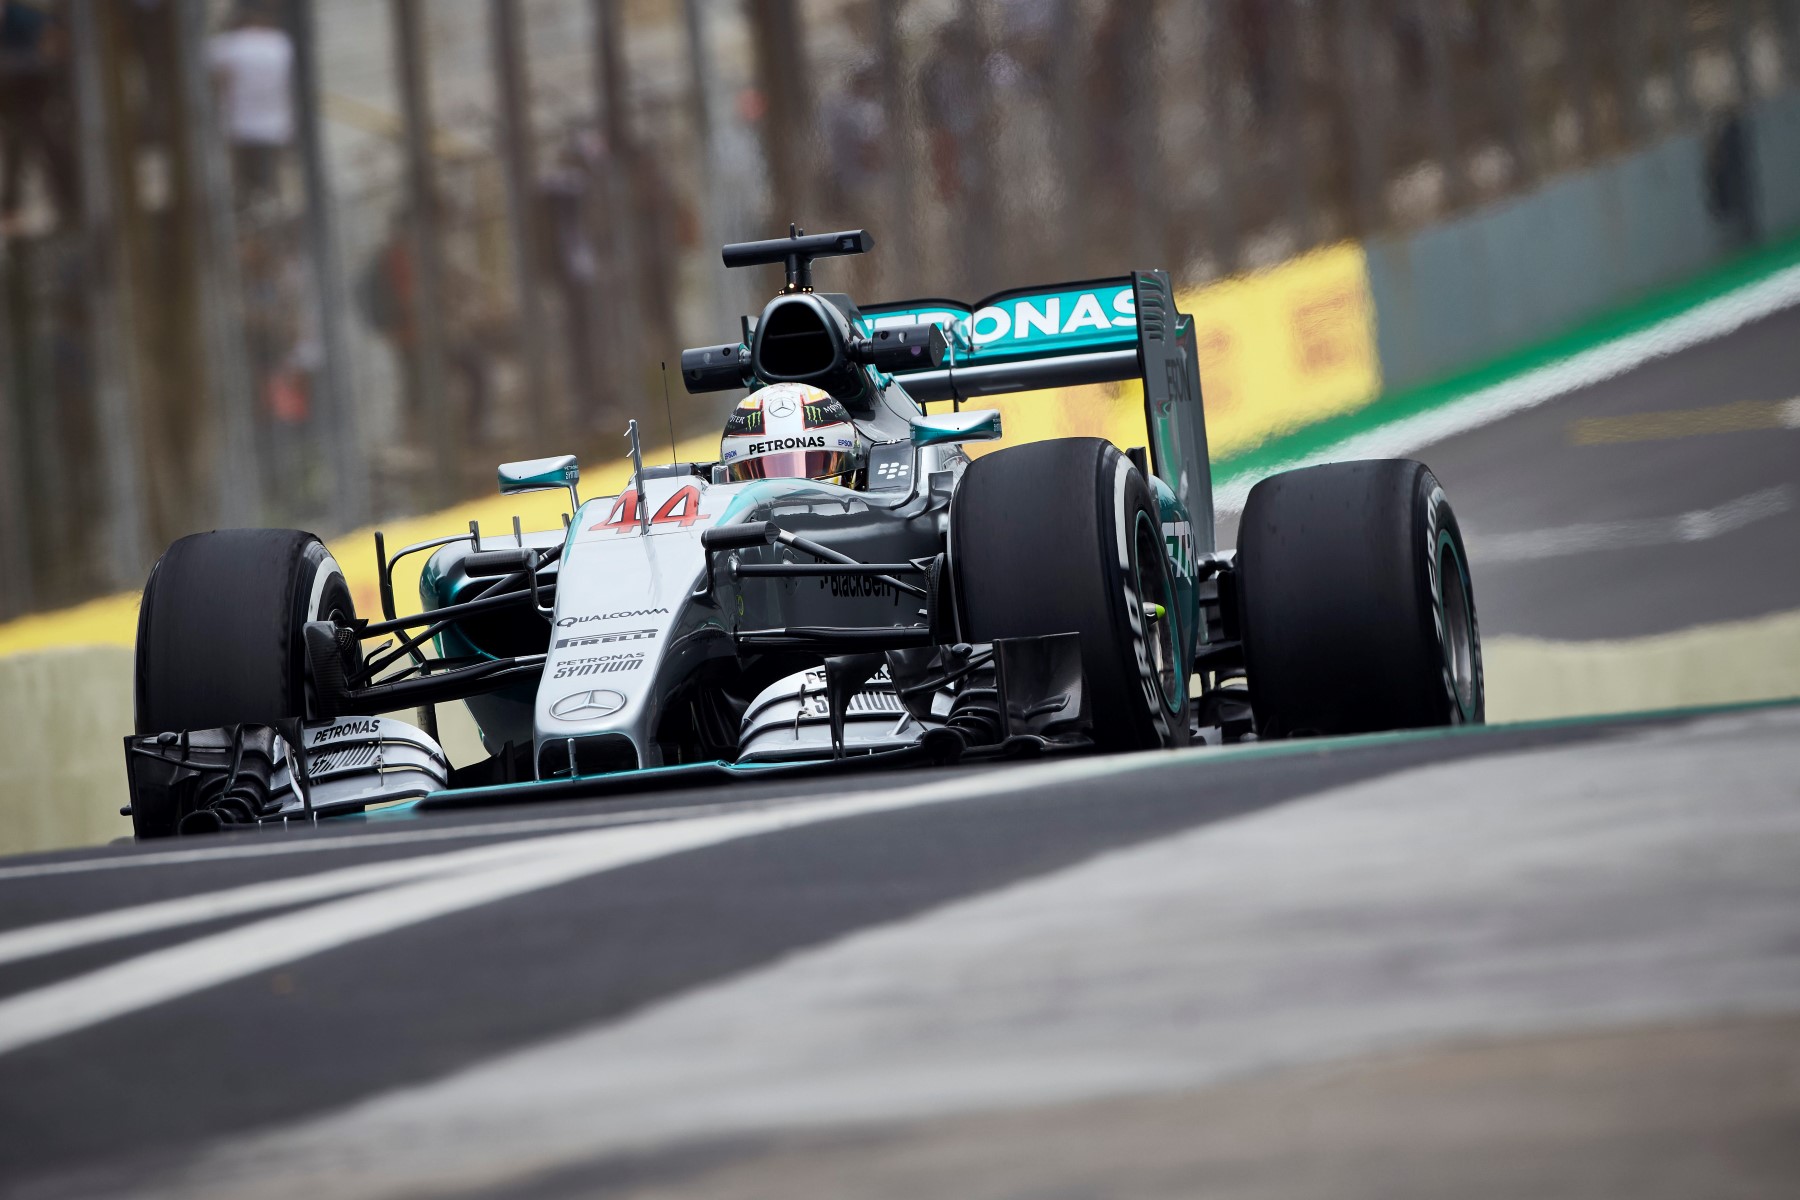 Lewis Hamilton - final Brazil practice session